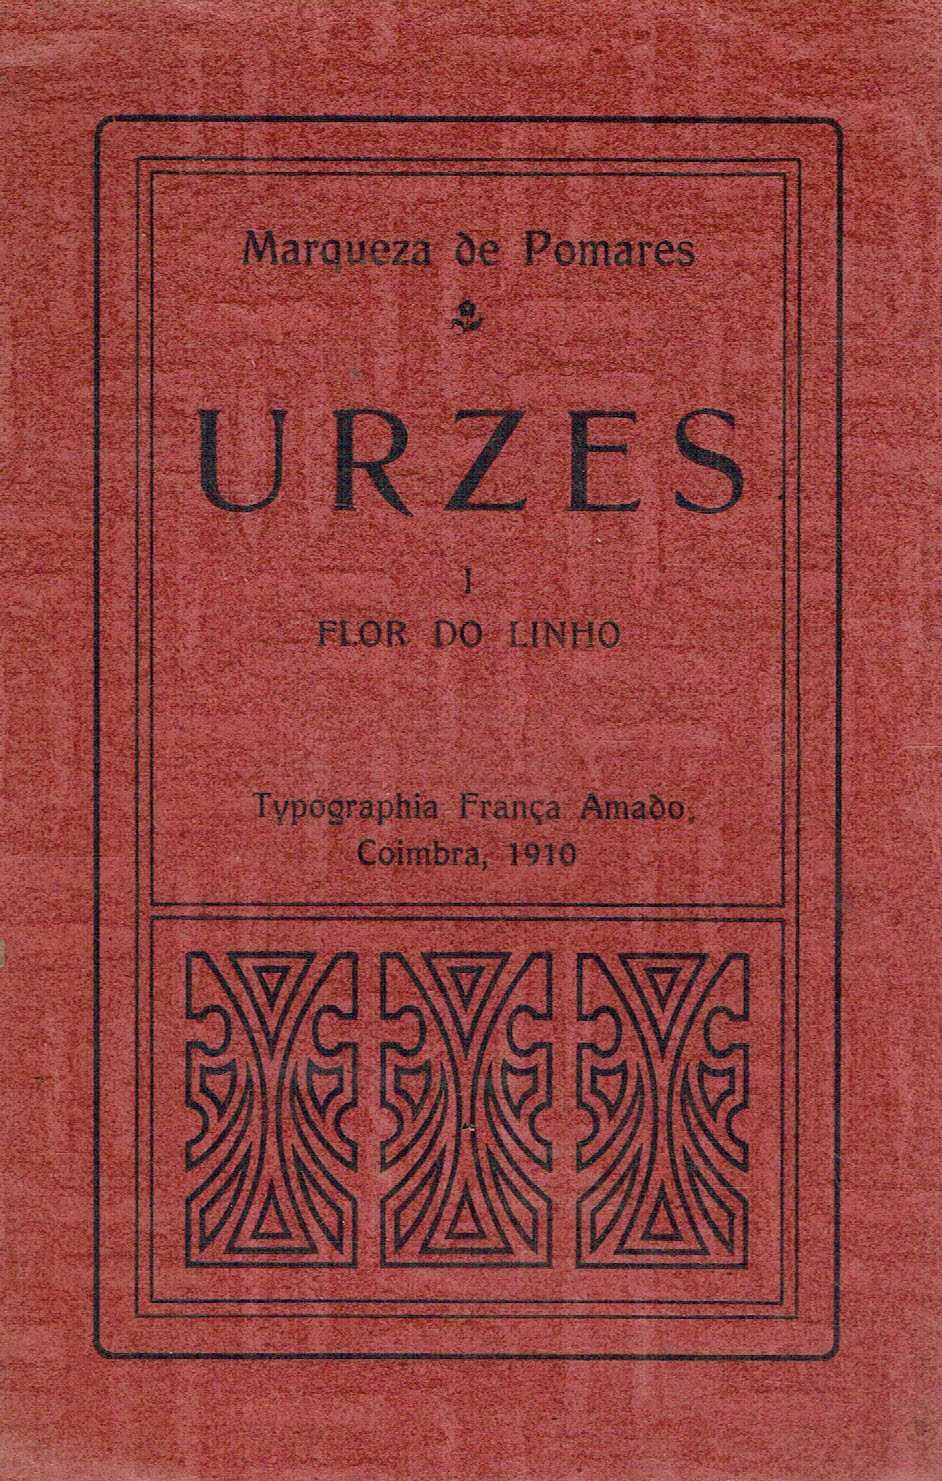 14927

Urzes - Flor do Linho - 1910
de Marqueza de Pomares